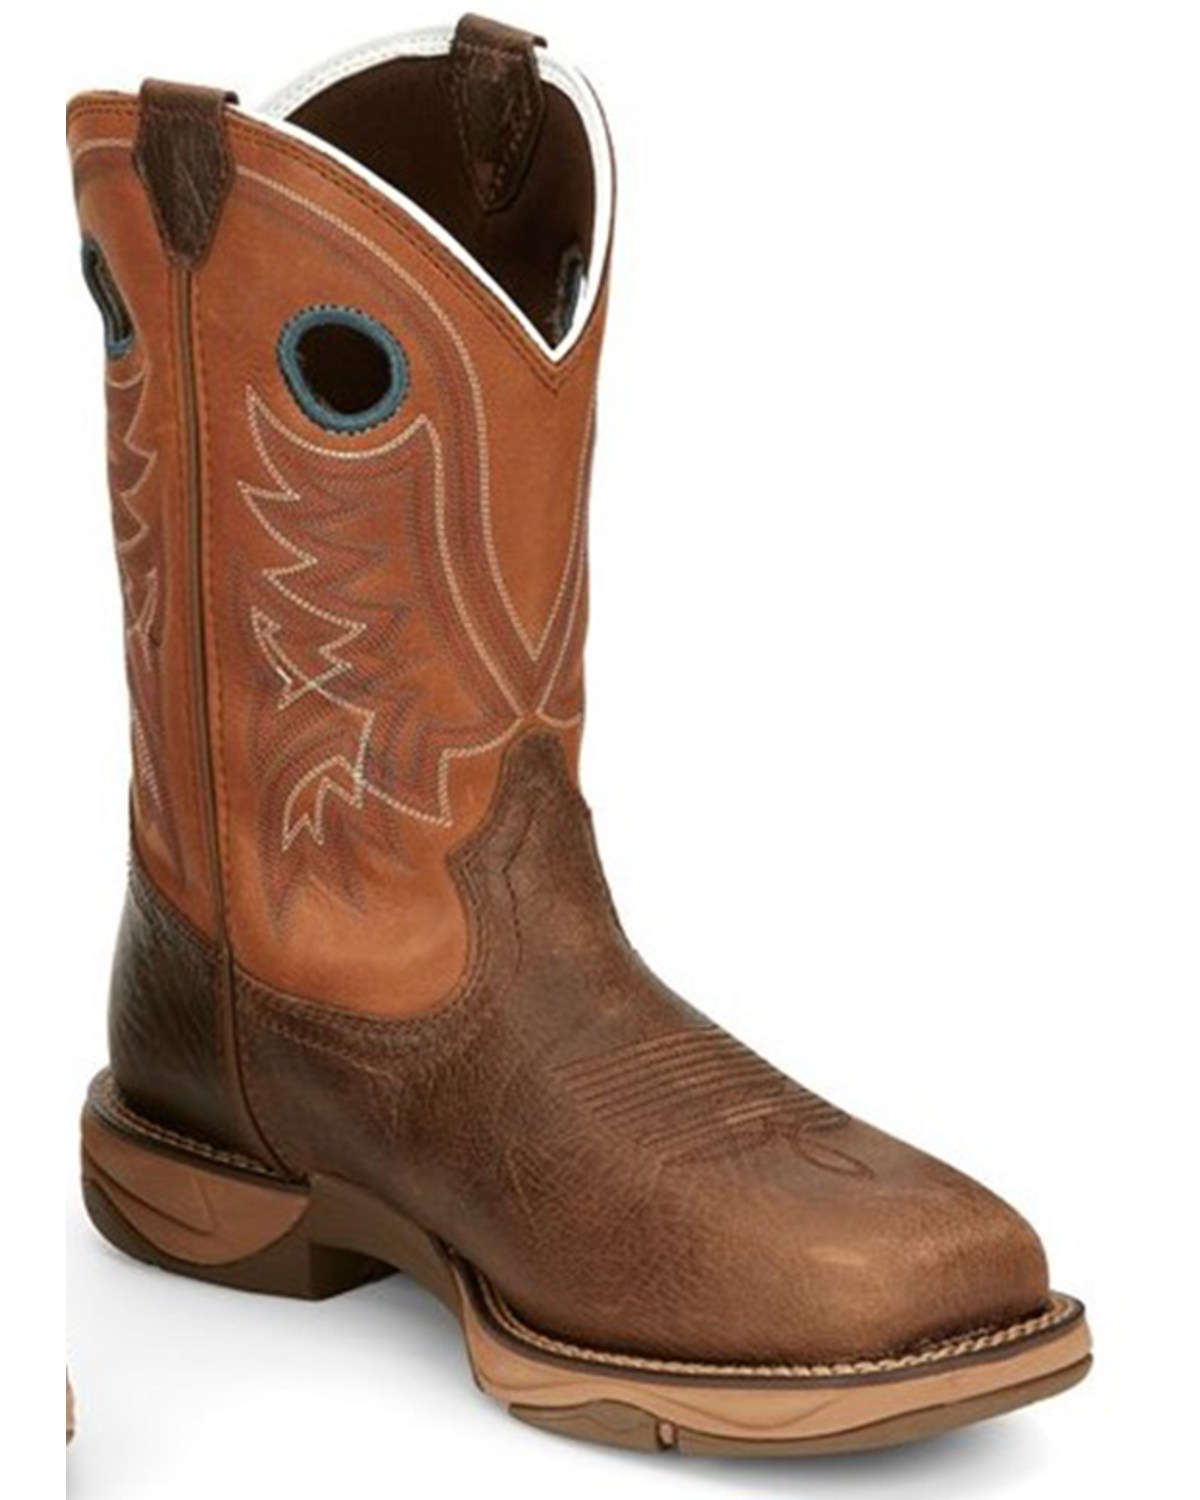 Tony Lama Men's Lopez Waterproof Western Work Boots - Steel Toe